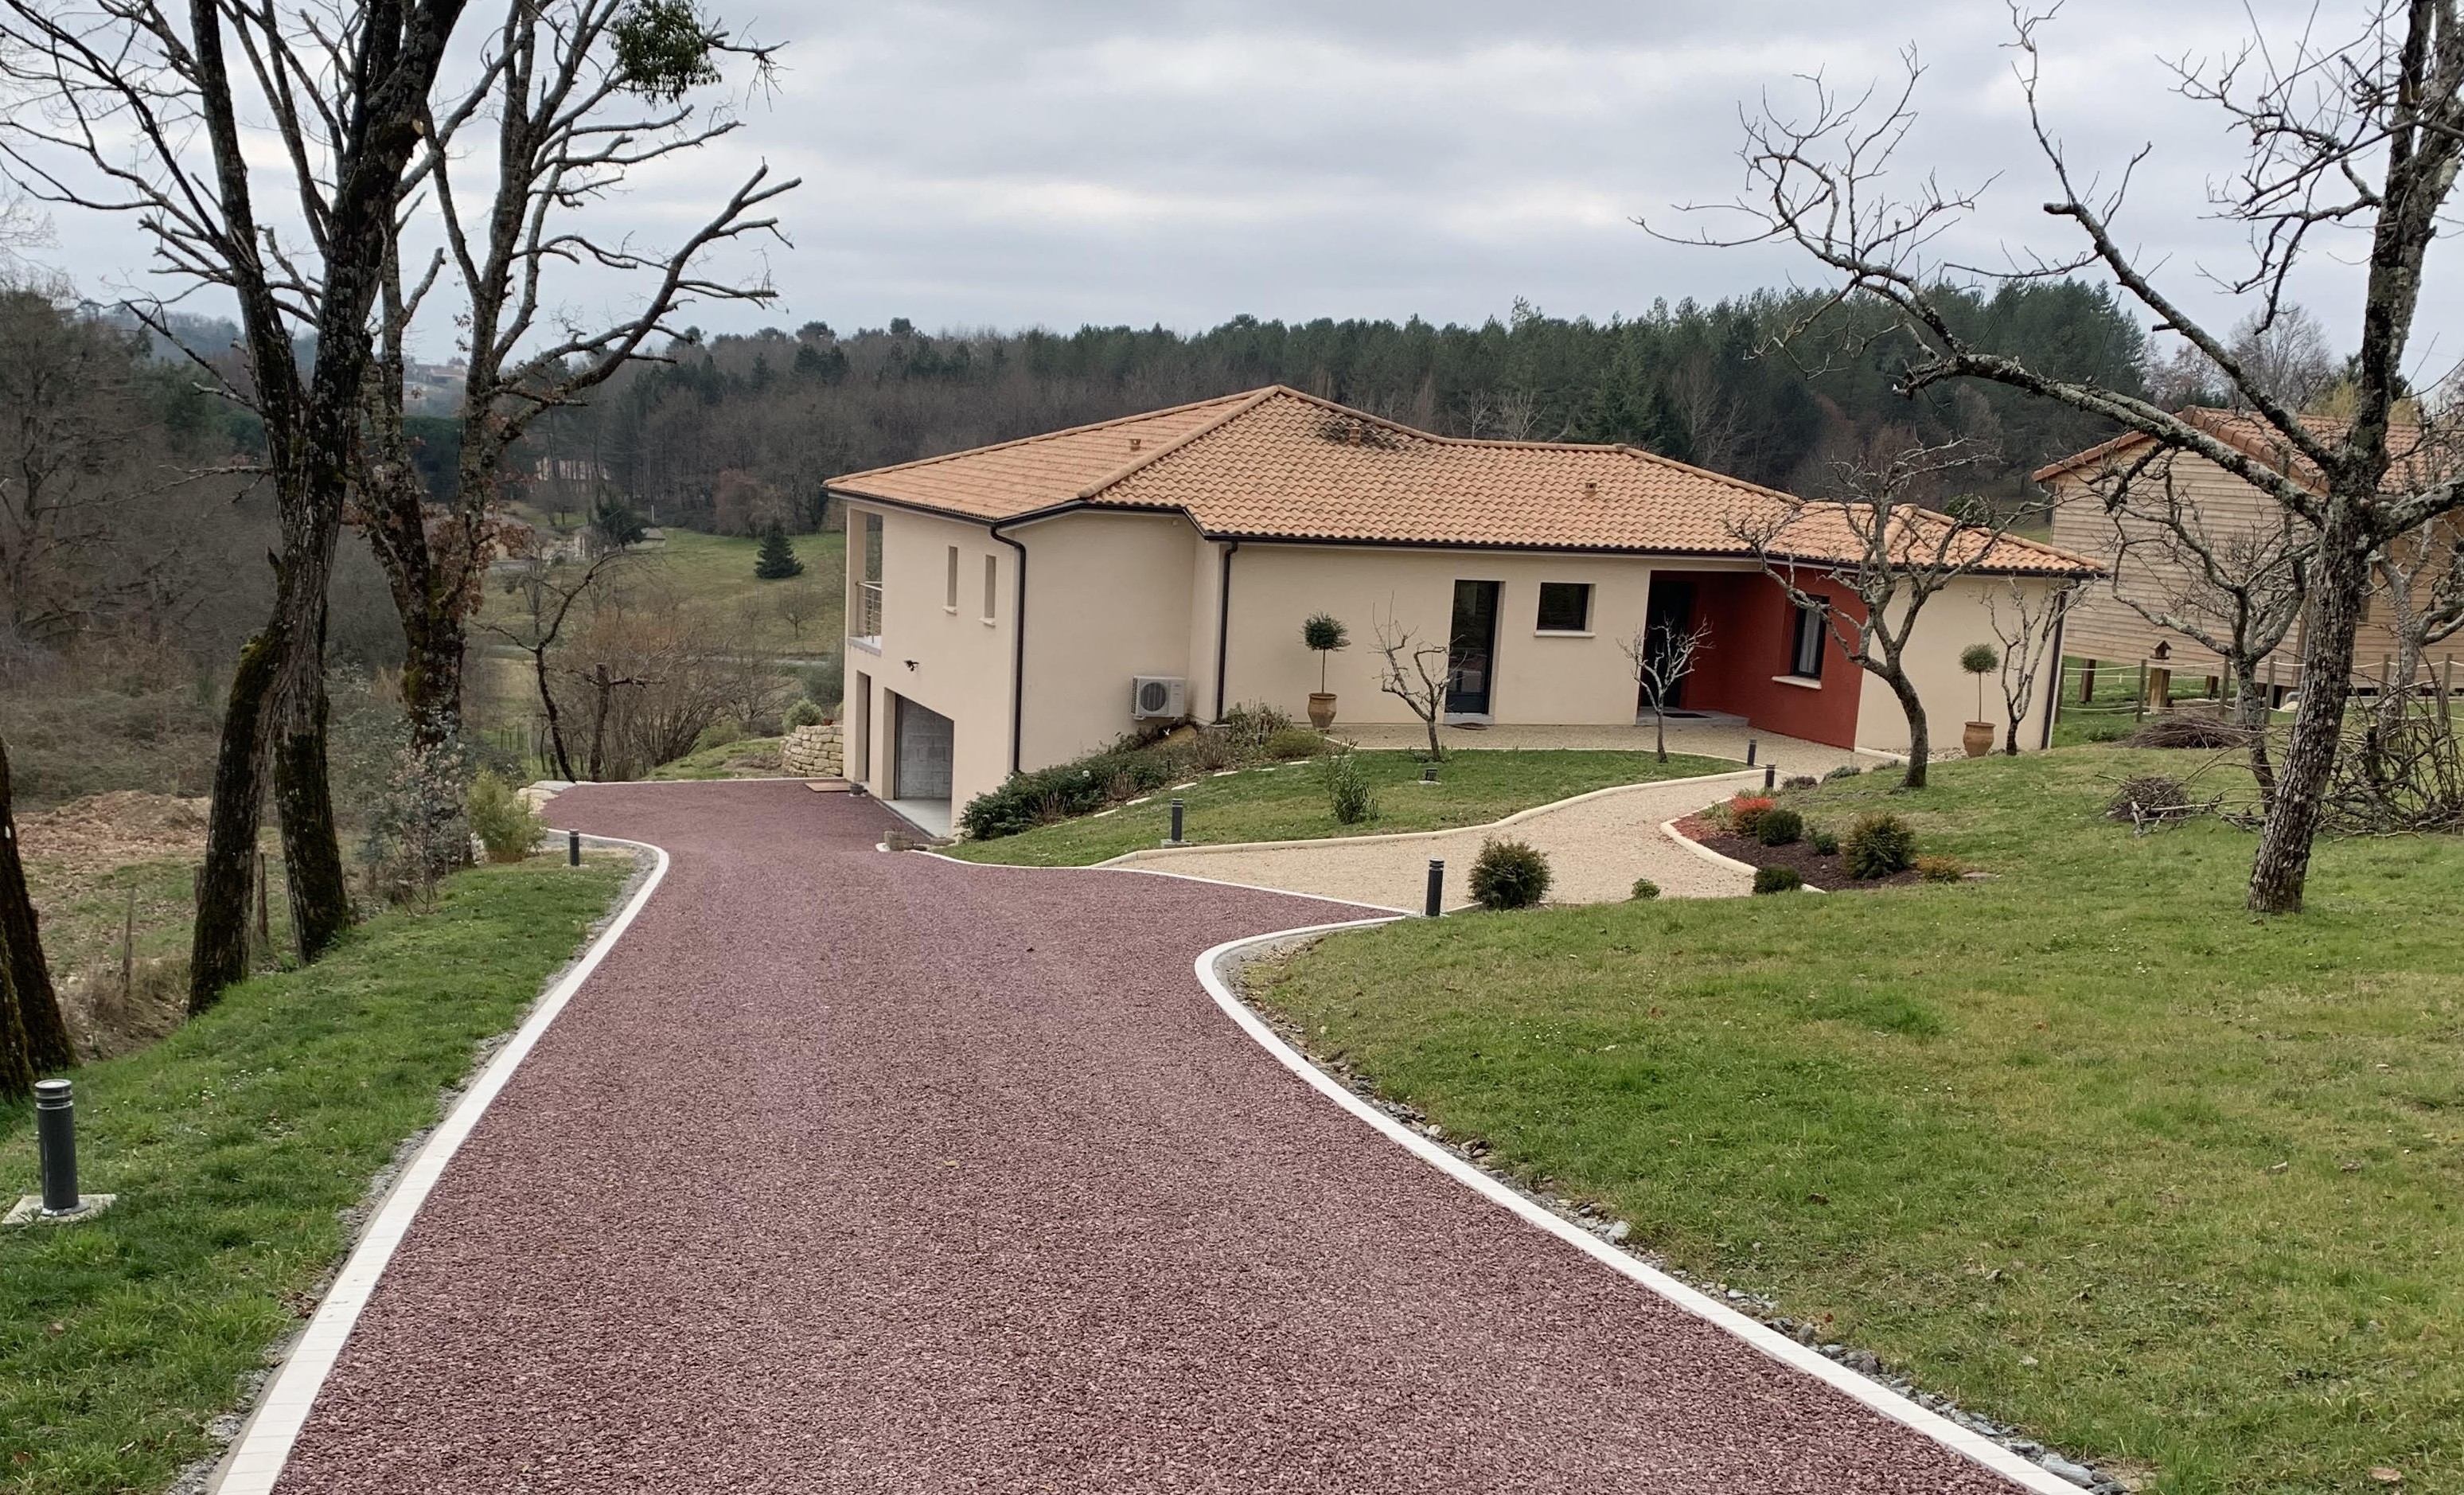 Conception Alle de garage en Gravistar et pav La Couture  - Dordogne cre le 16/05/2019